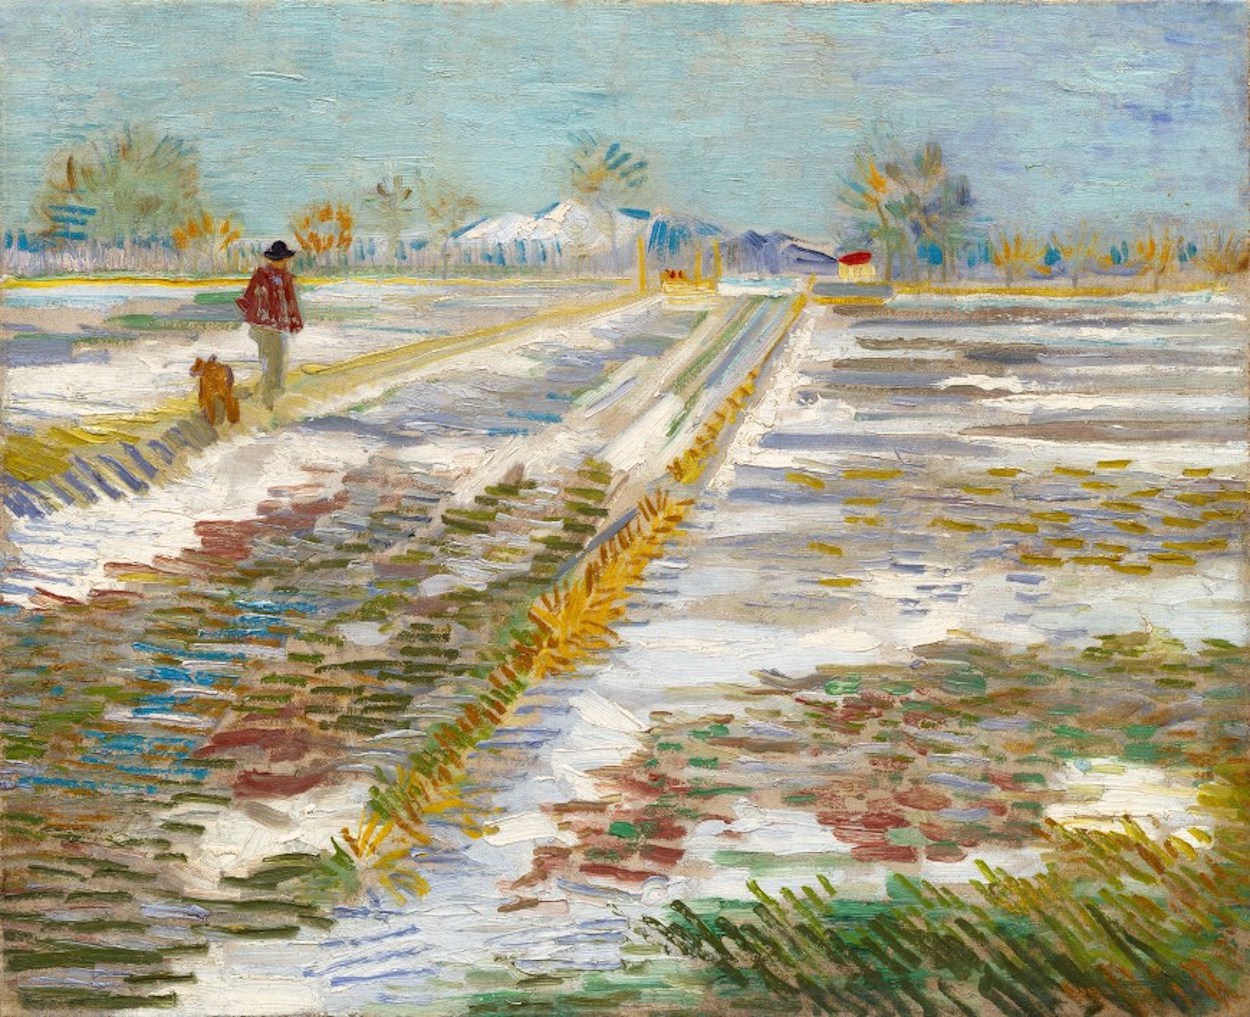 Pejzaż Ze Śniegiem by Vincent van Gogh - 1888 - 38 x 46 cm 